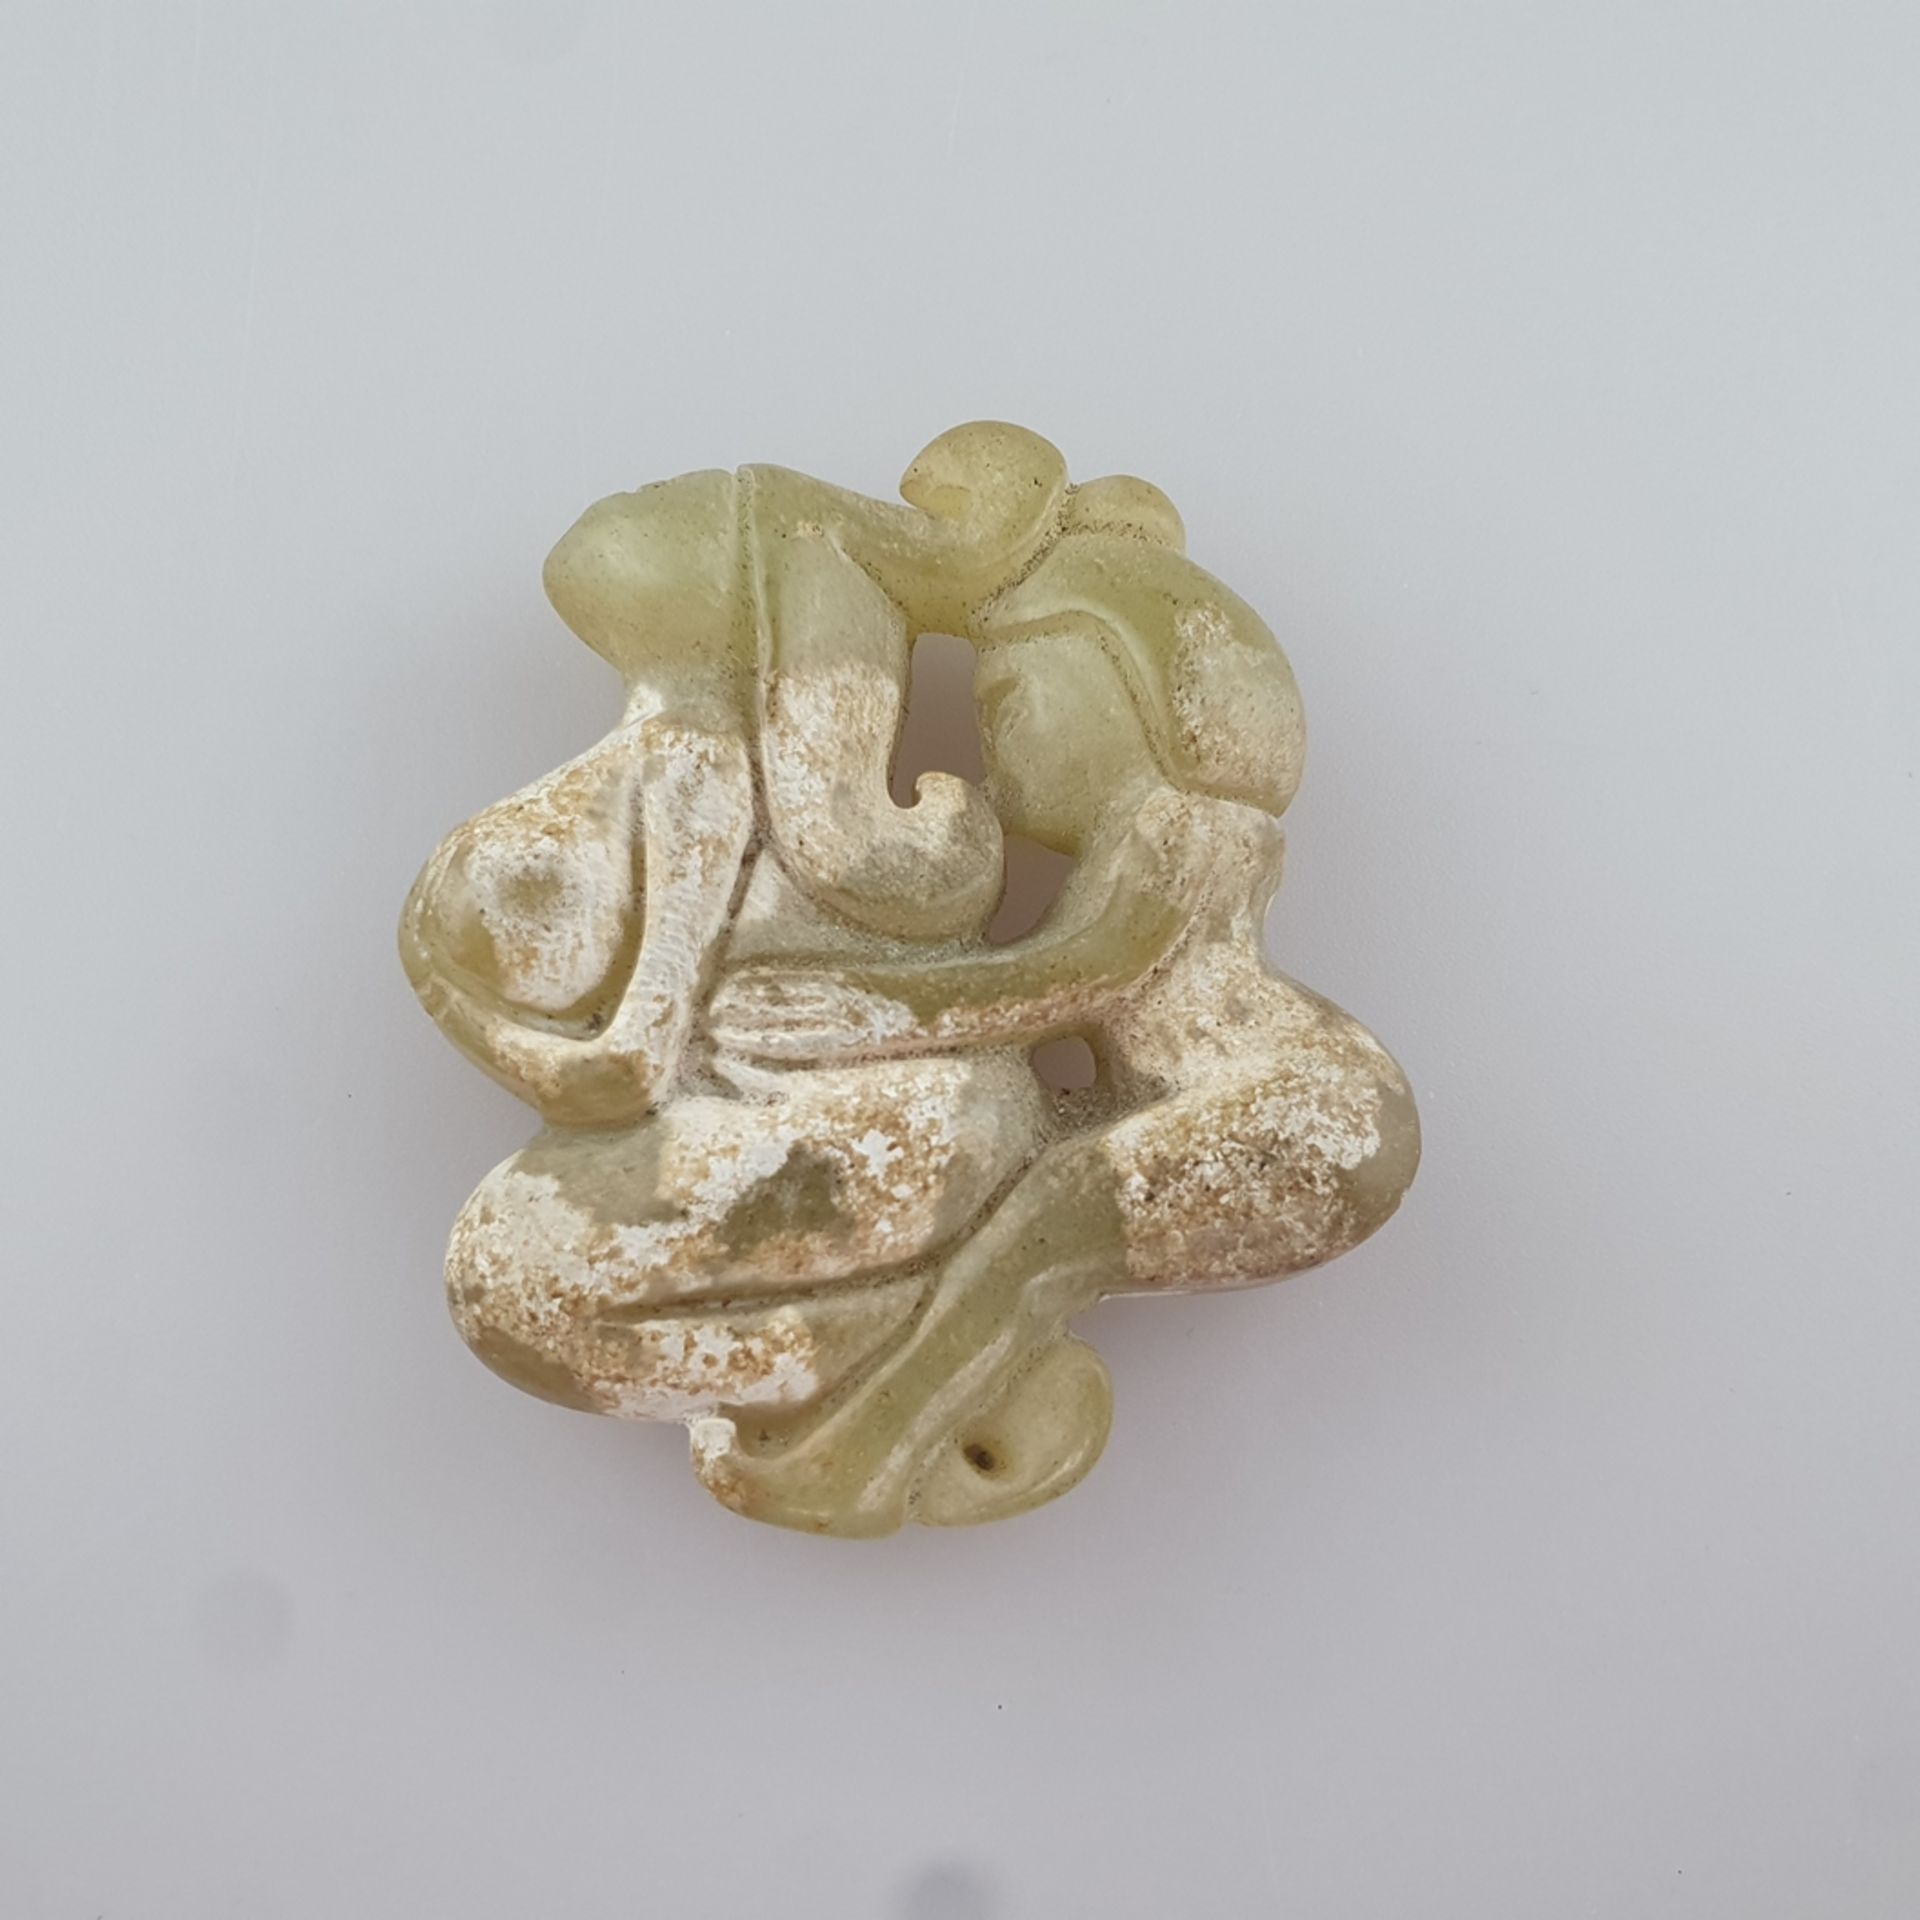 Jade mit erotischer Paarszene- China, gelblich grüne Jade, teils kalzifiziert, stilisierte Darstell - Bild 3 aus 6